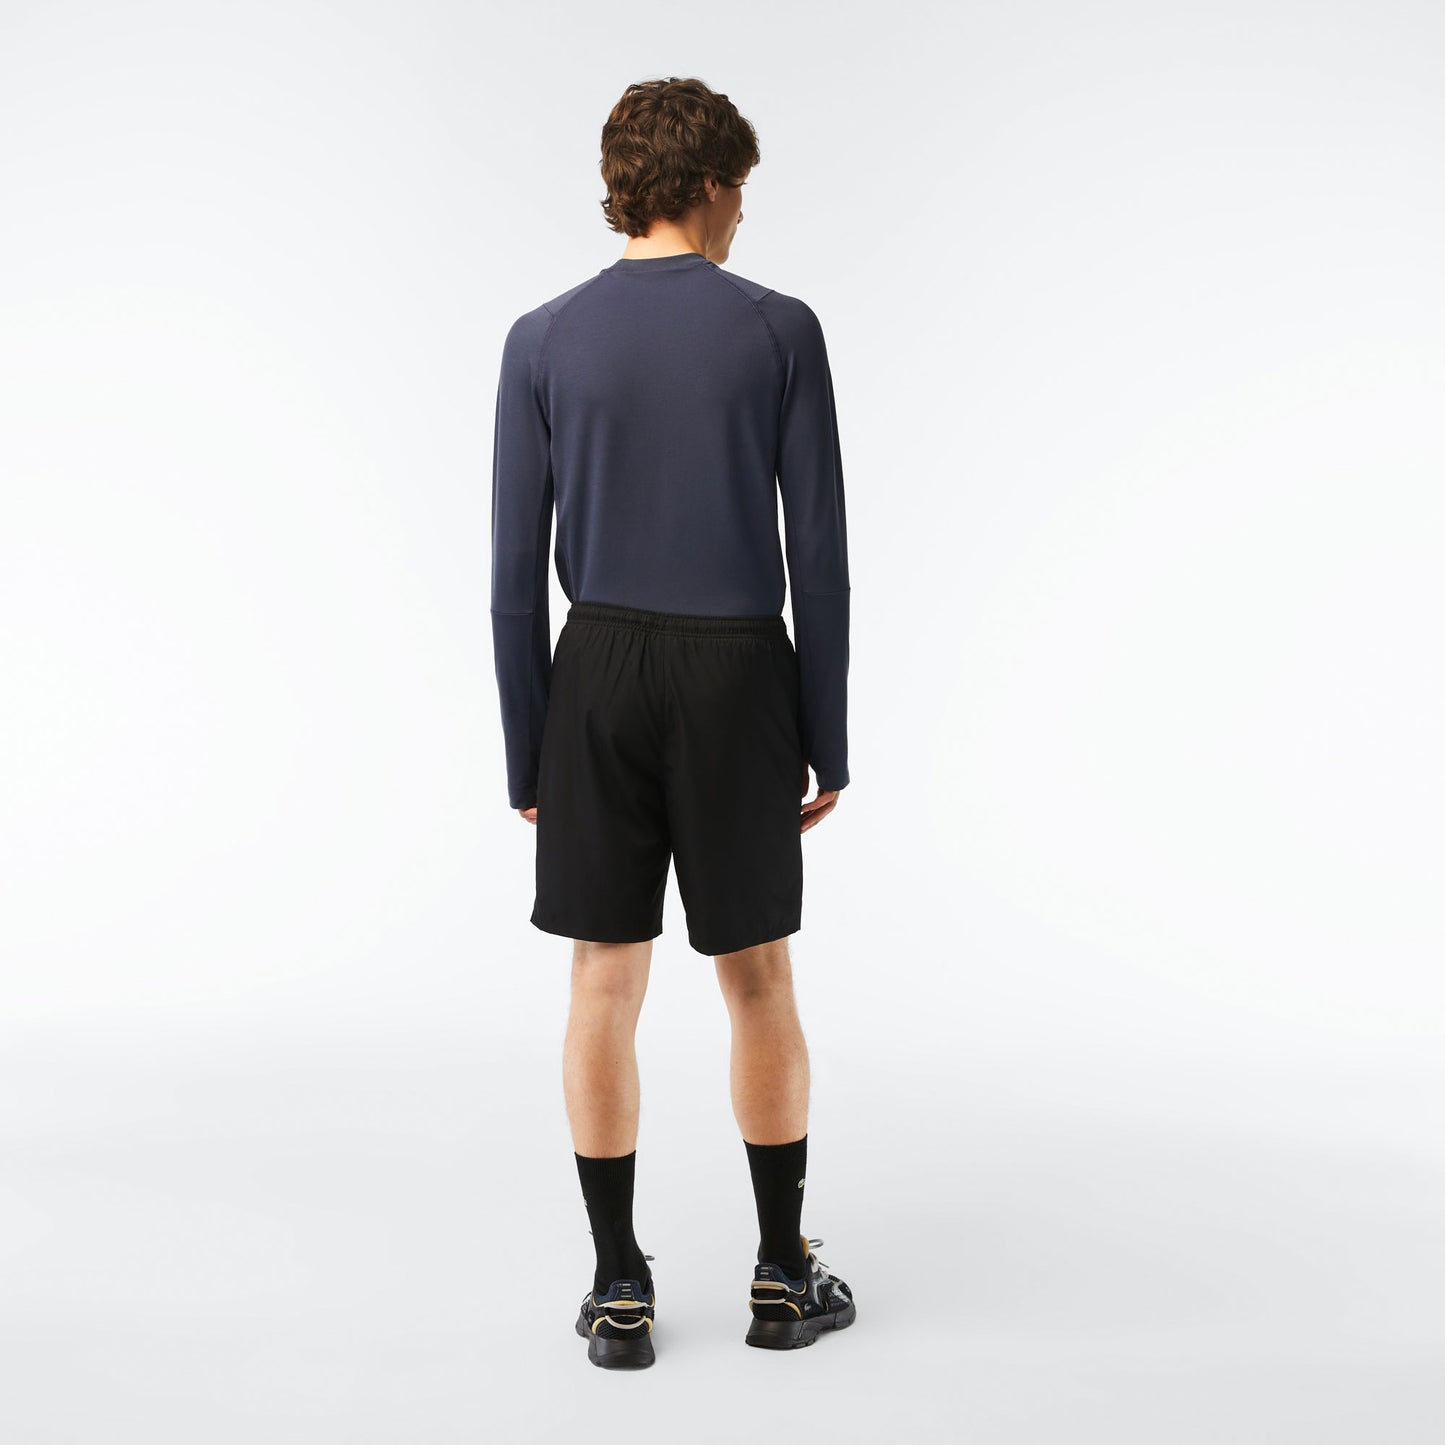 Lacoste Core Men's Tennis Shorts Black (2)